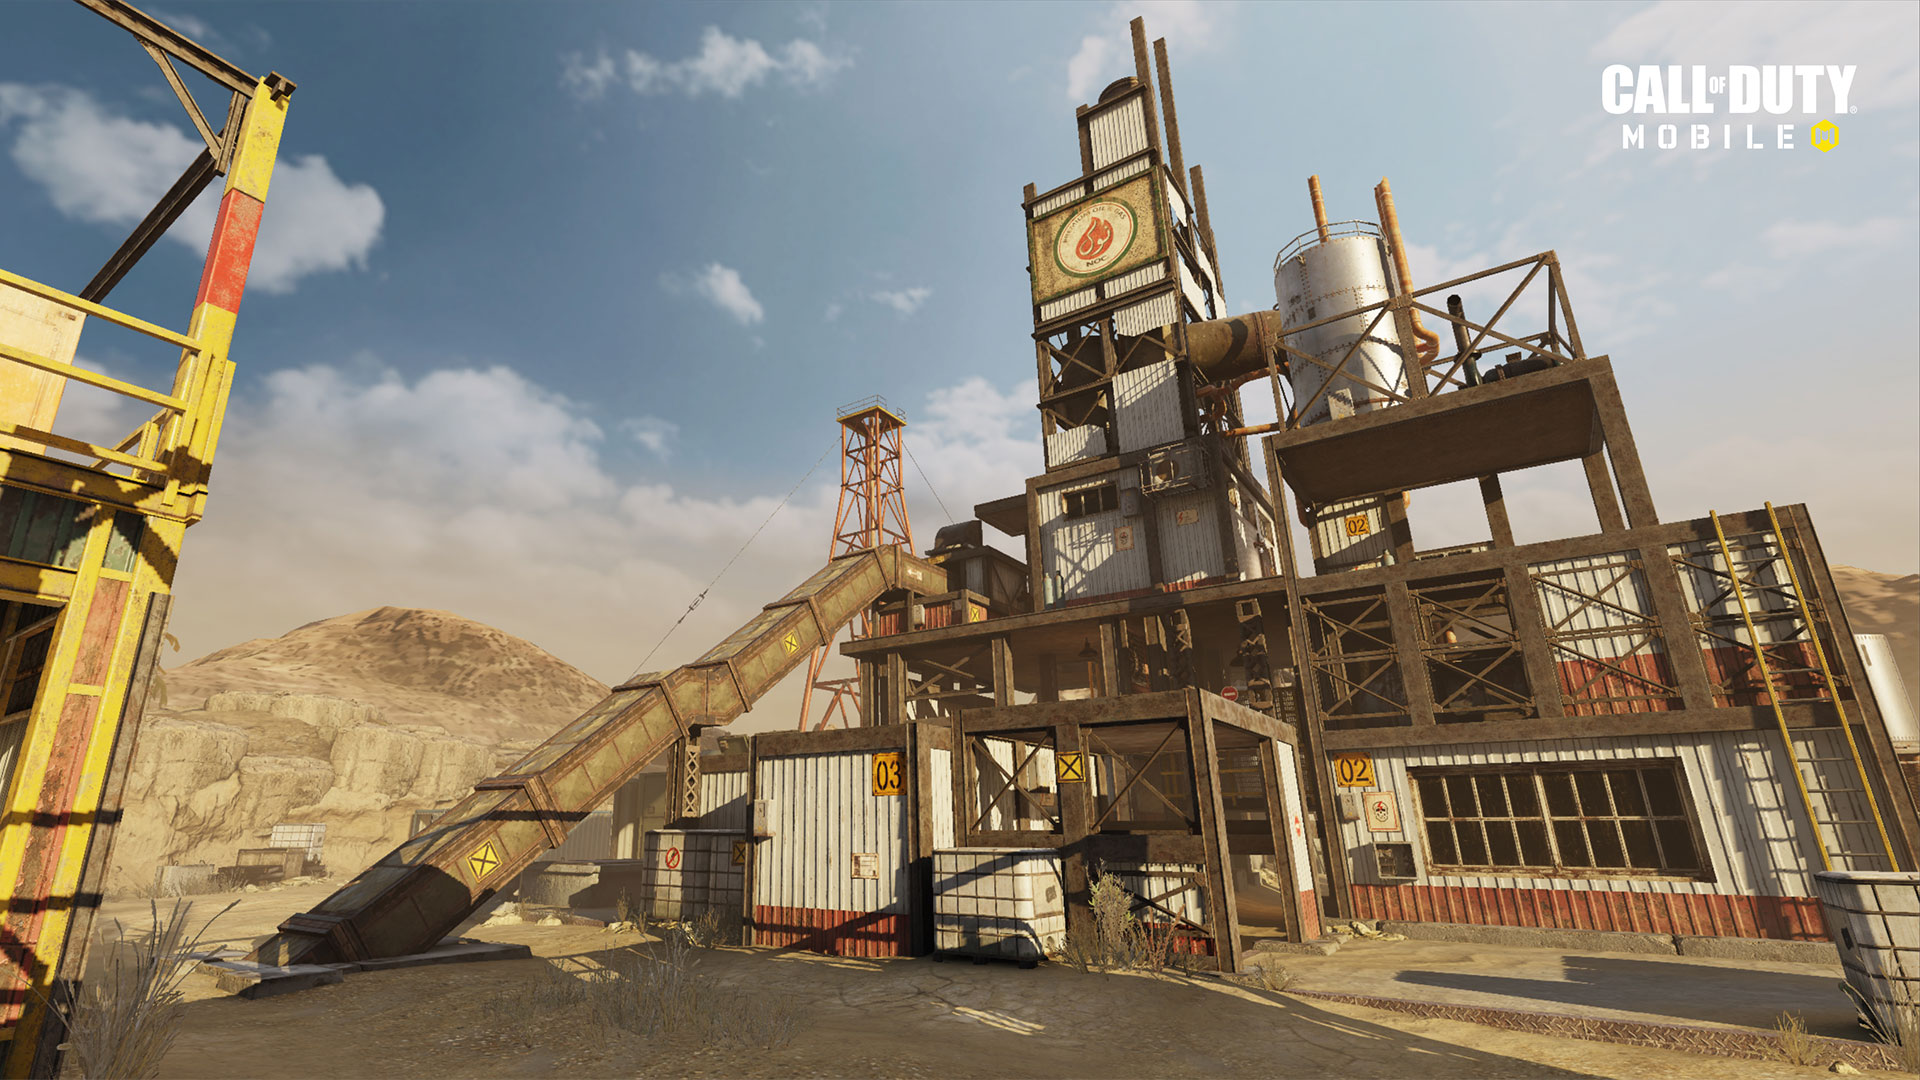 الإصدار 1.0.12 من "Call of Duty: Mobile" متاح الآن بشكل مباشر لتقديم الدعم للموسم التالي "ذات مرة في الصدأ" ، وخرائط جديدة ، وموسم جديد مصنّف ، والمزيد 8